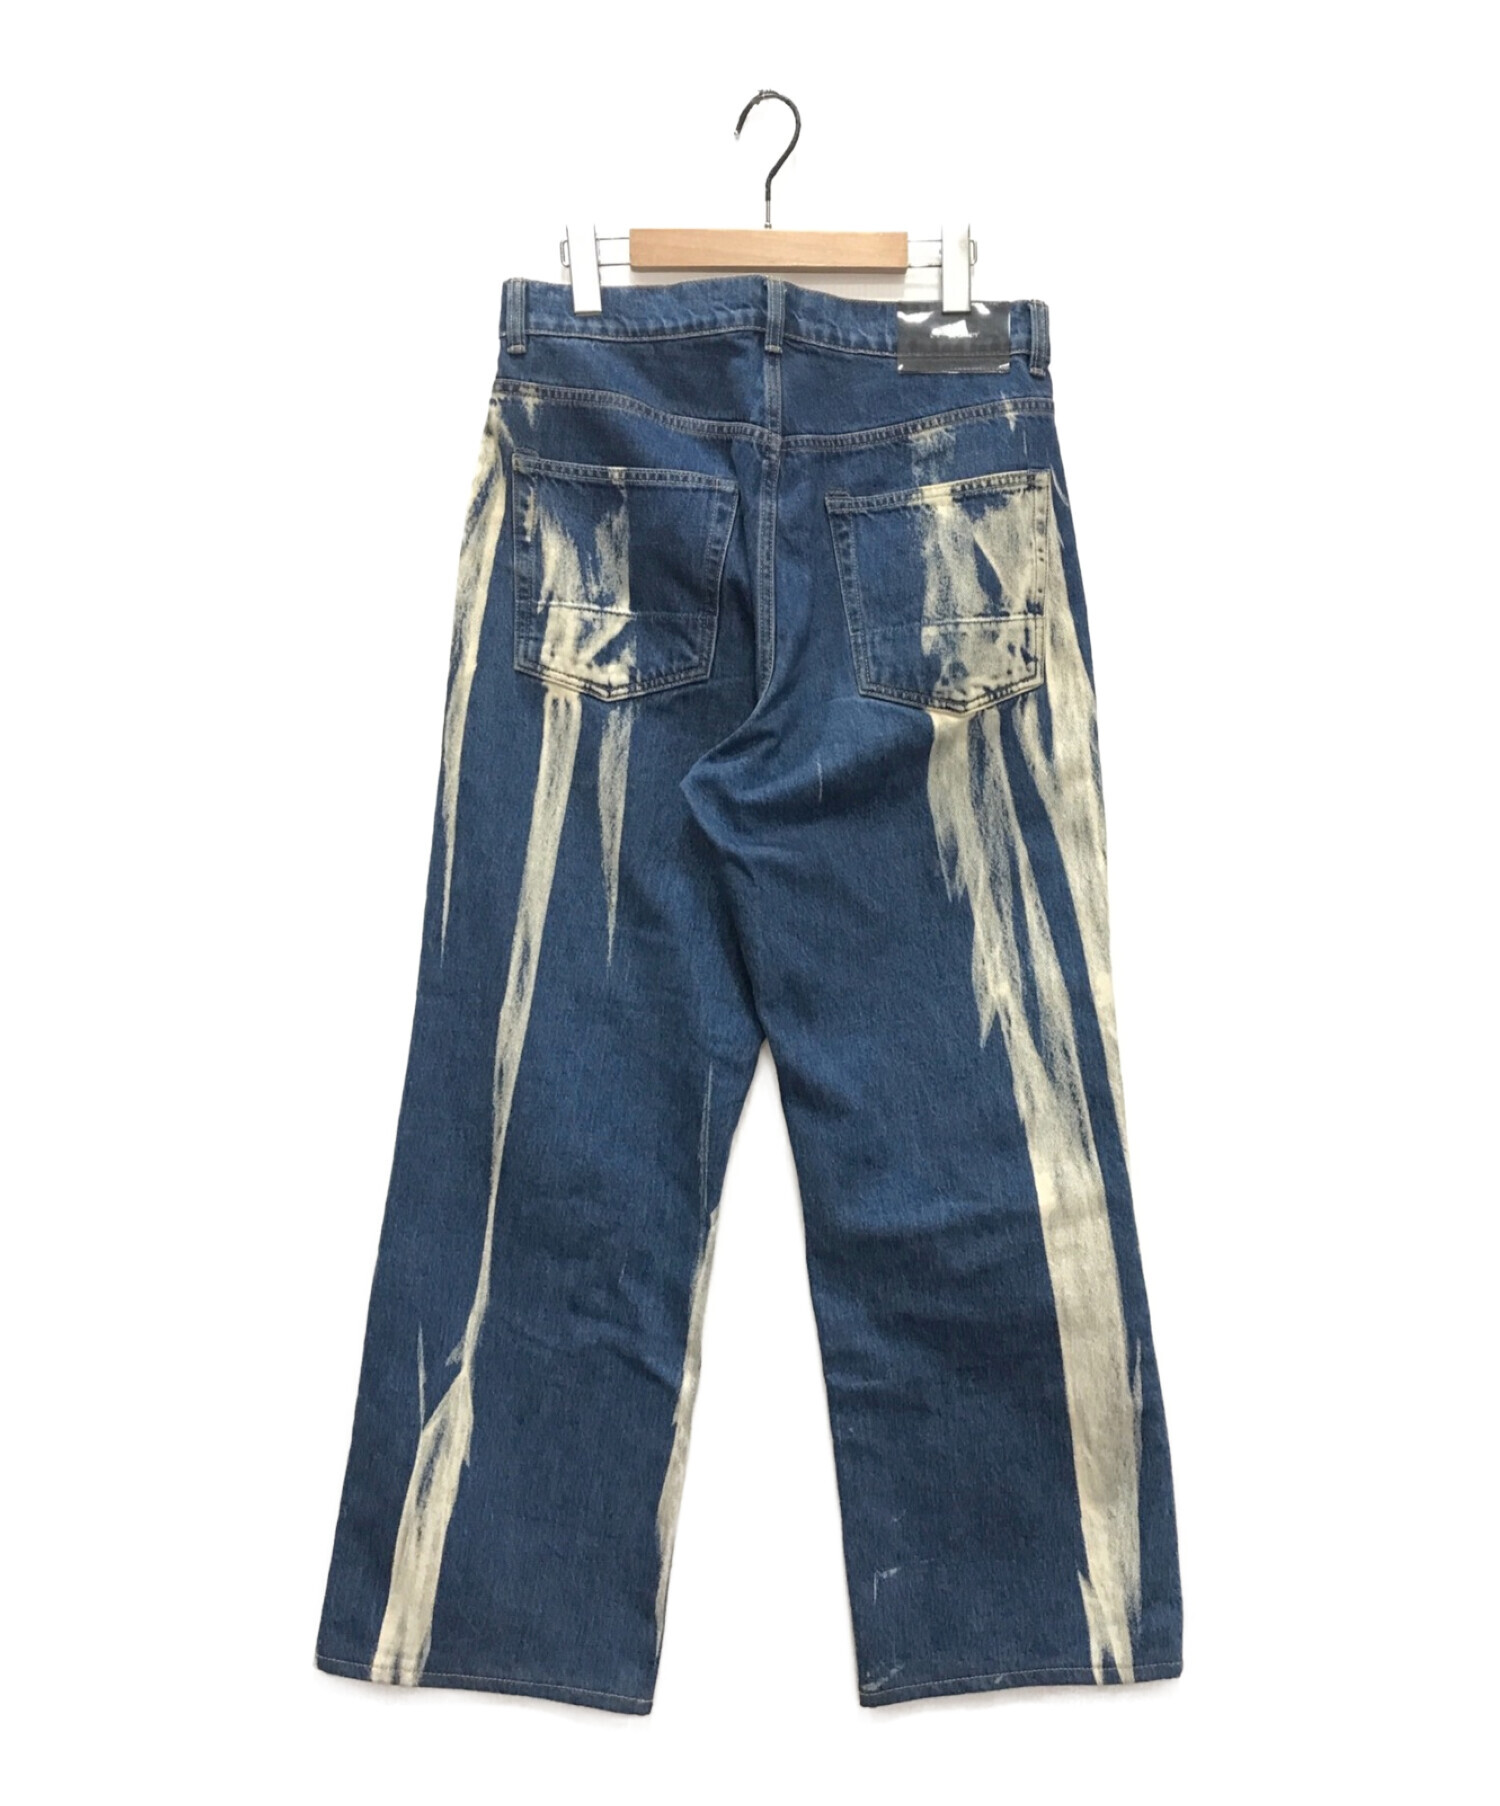 アーカイブ【BALENCIAGA】17AW bleach denim jeans 29